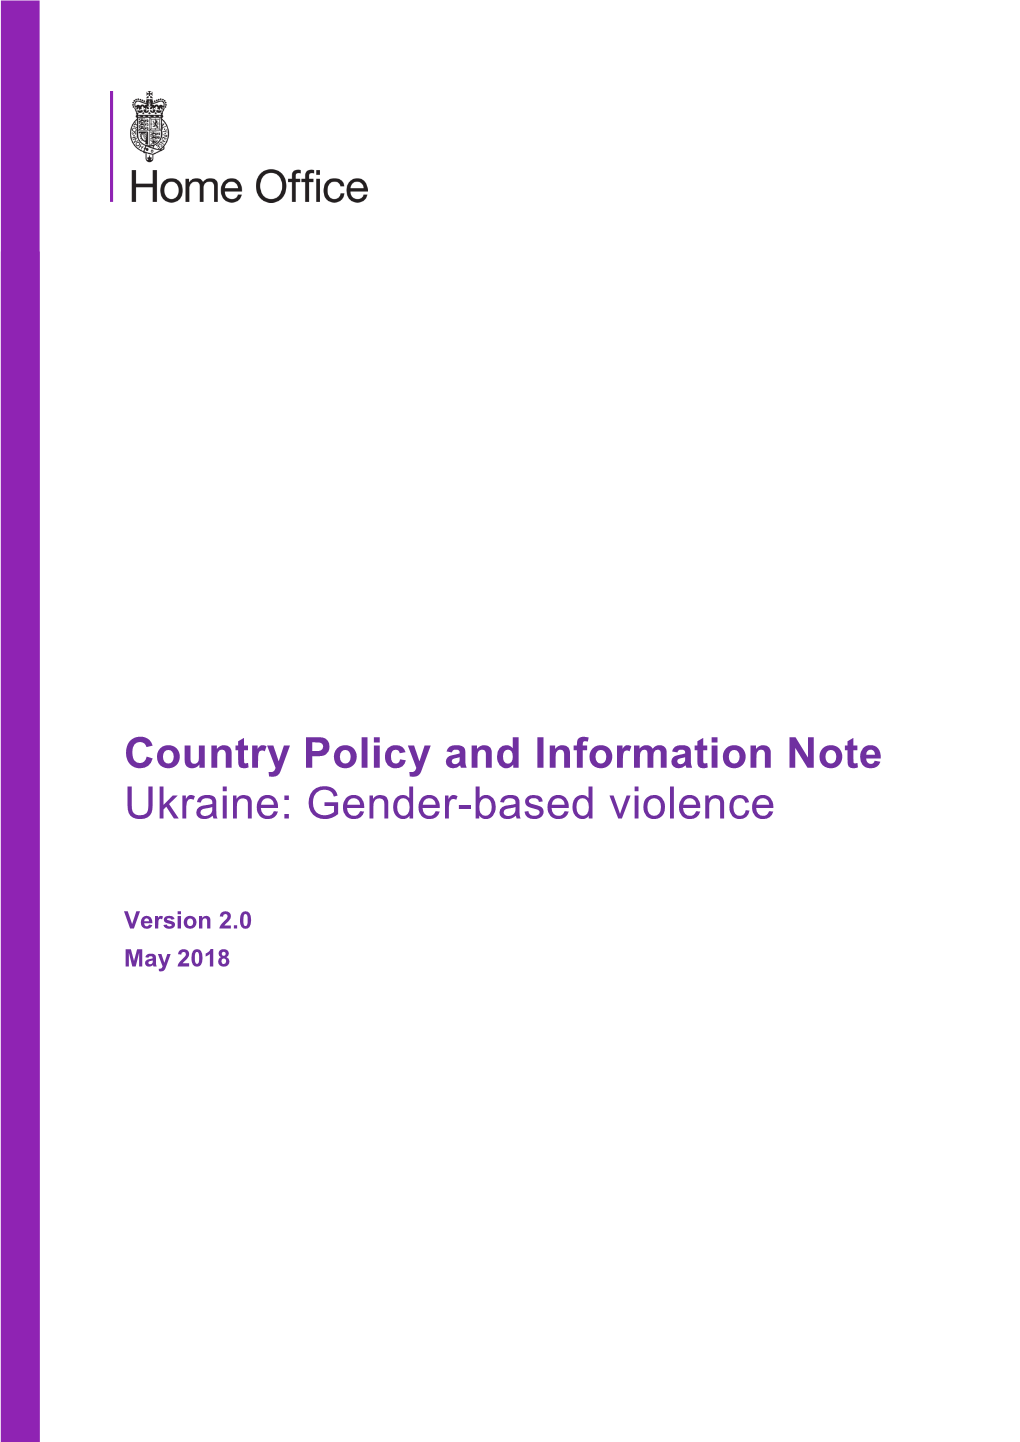 Ukraine: Gender-Based Violence